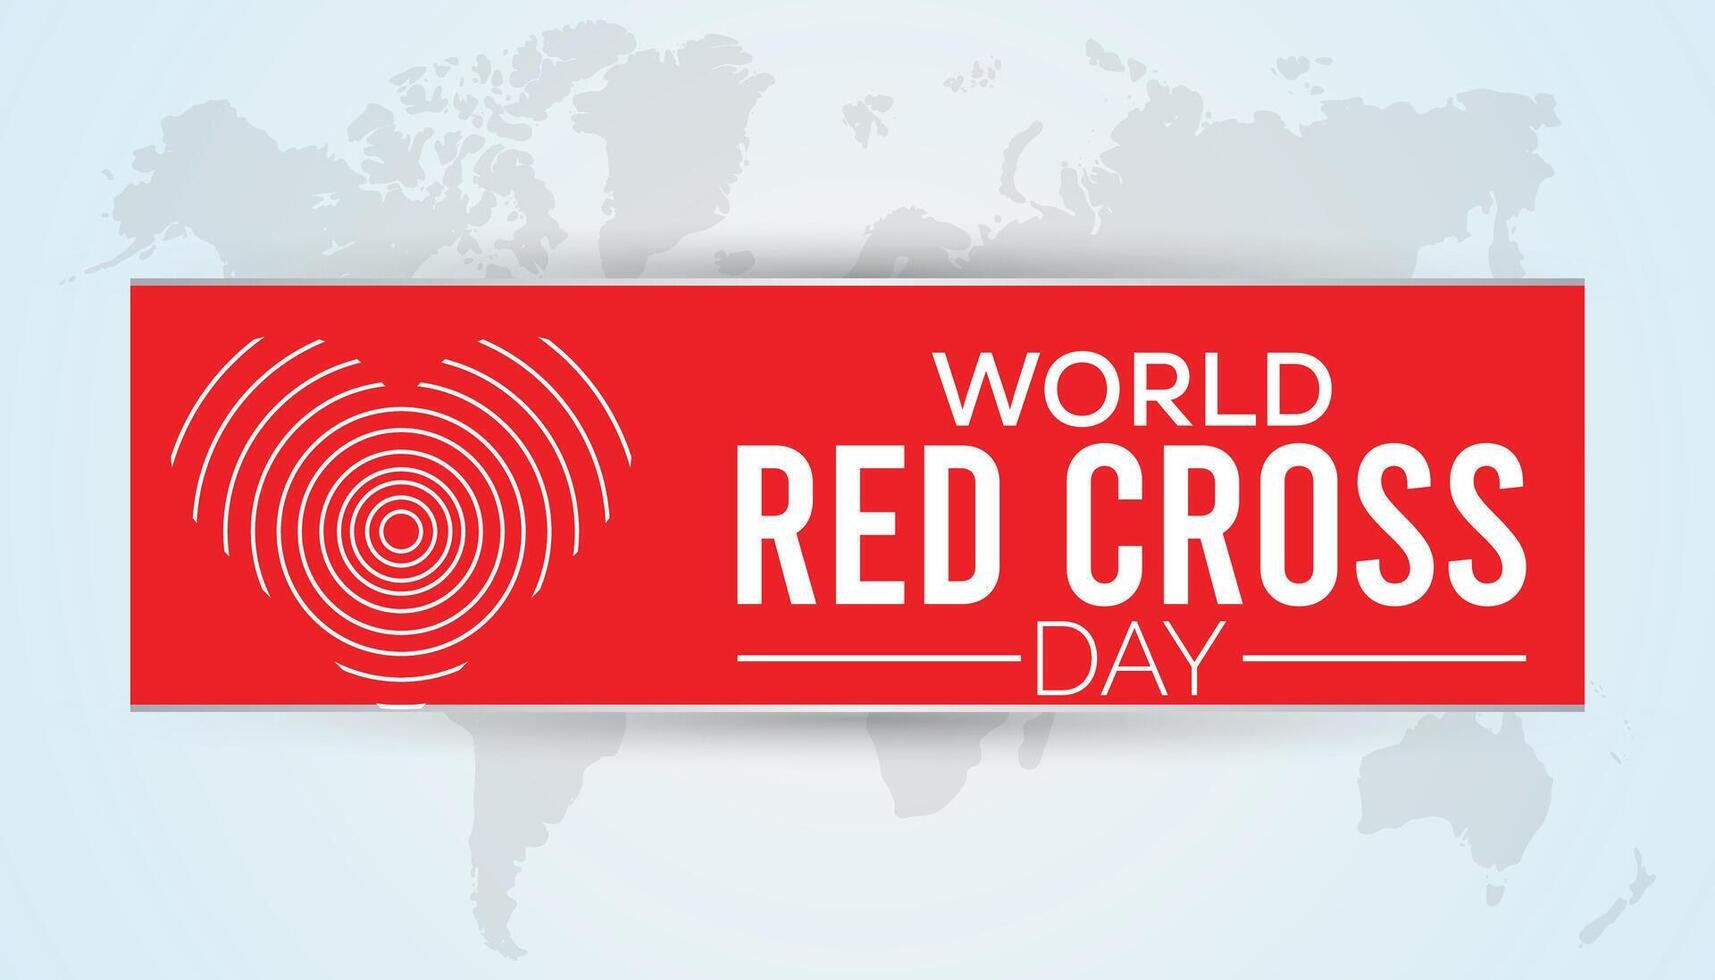 värld röd korsa dag observerats varje år i Maj. mall för bakgrund, baner, kort, affisch med text inskrift. vektor